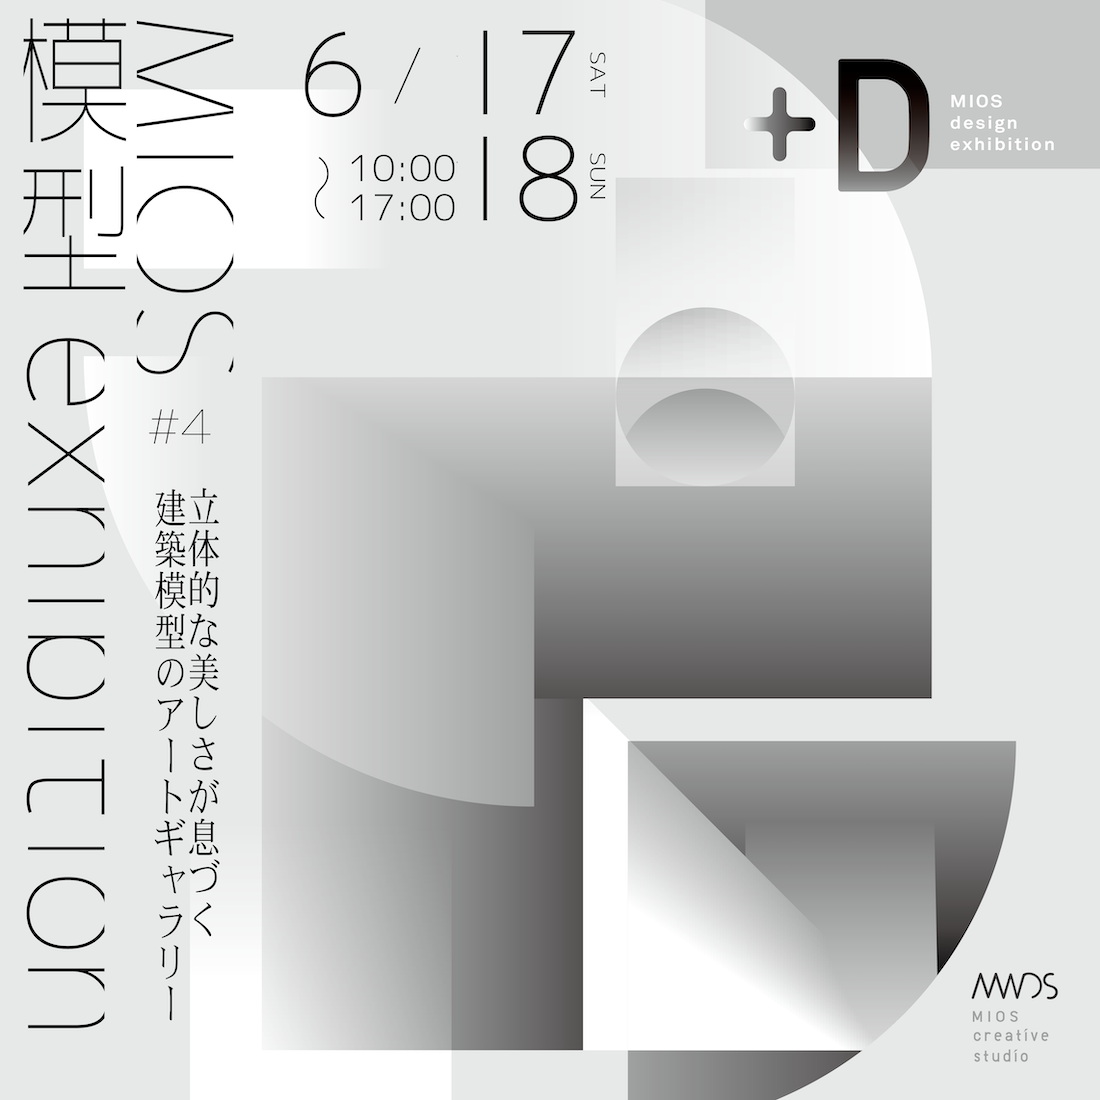 6/17(土)18(日)  +D #4「MIOS模型exhibition」